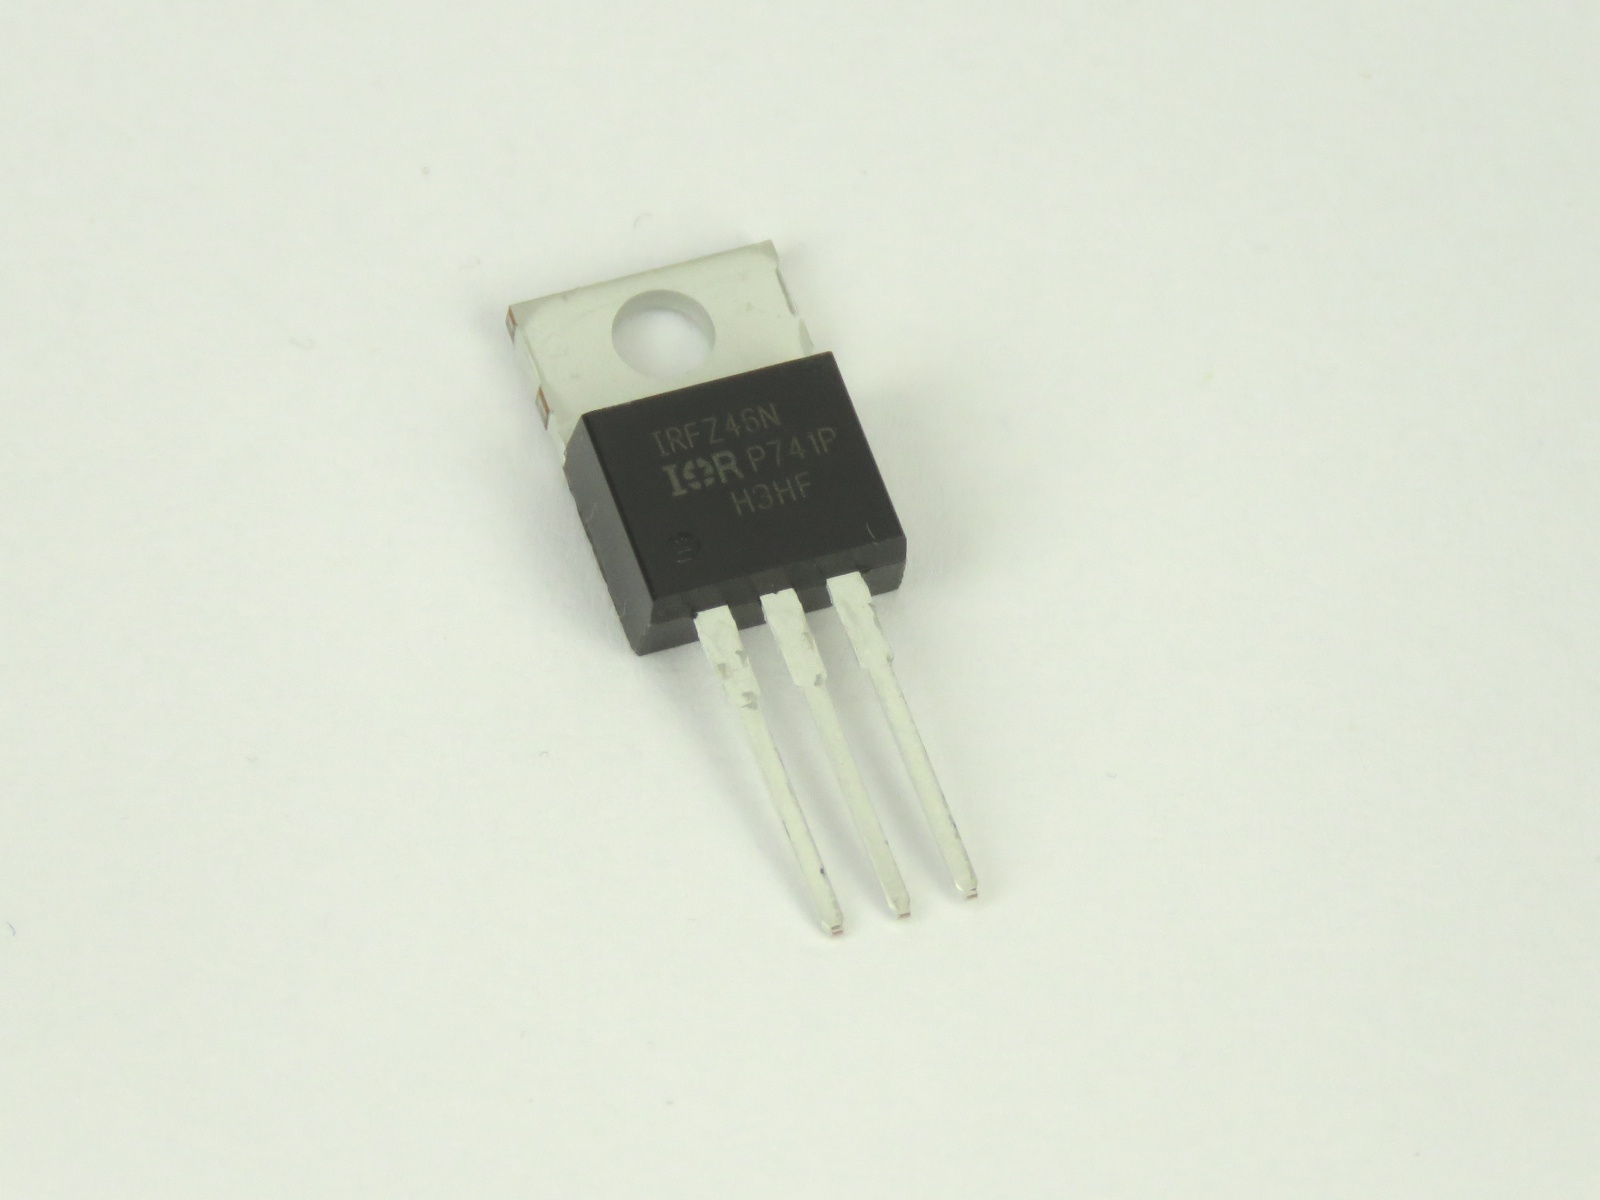 Transistor IRFZ46N